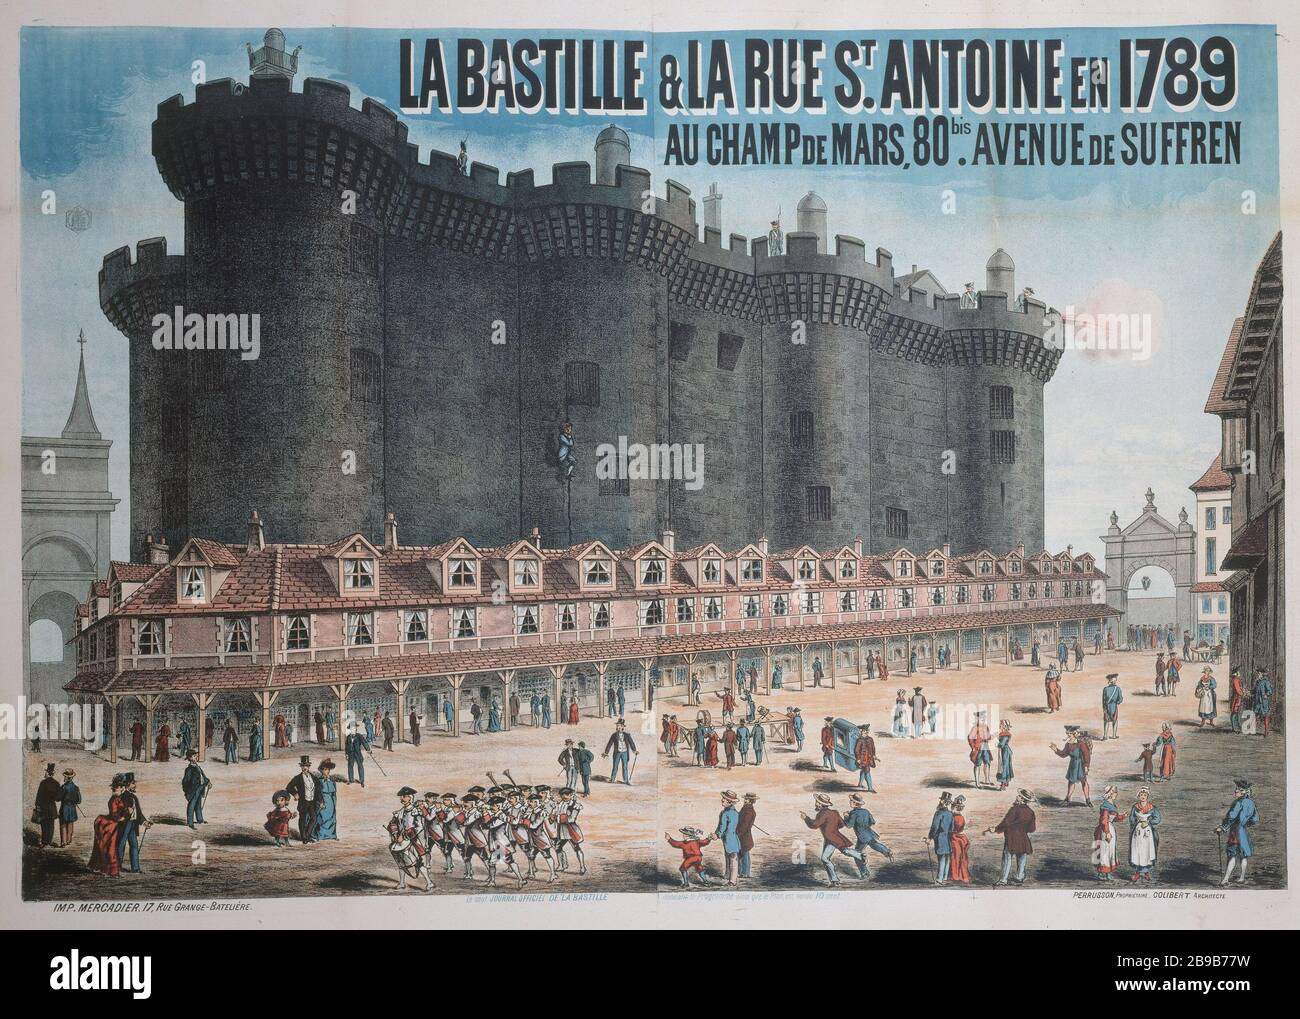 Saint antoine bastille paris hi-res stock photography and images - Alamy